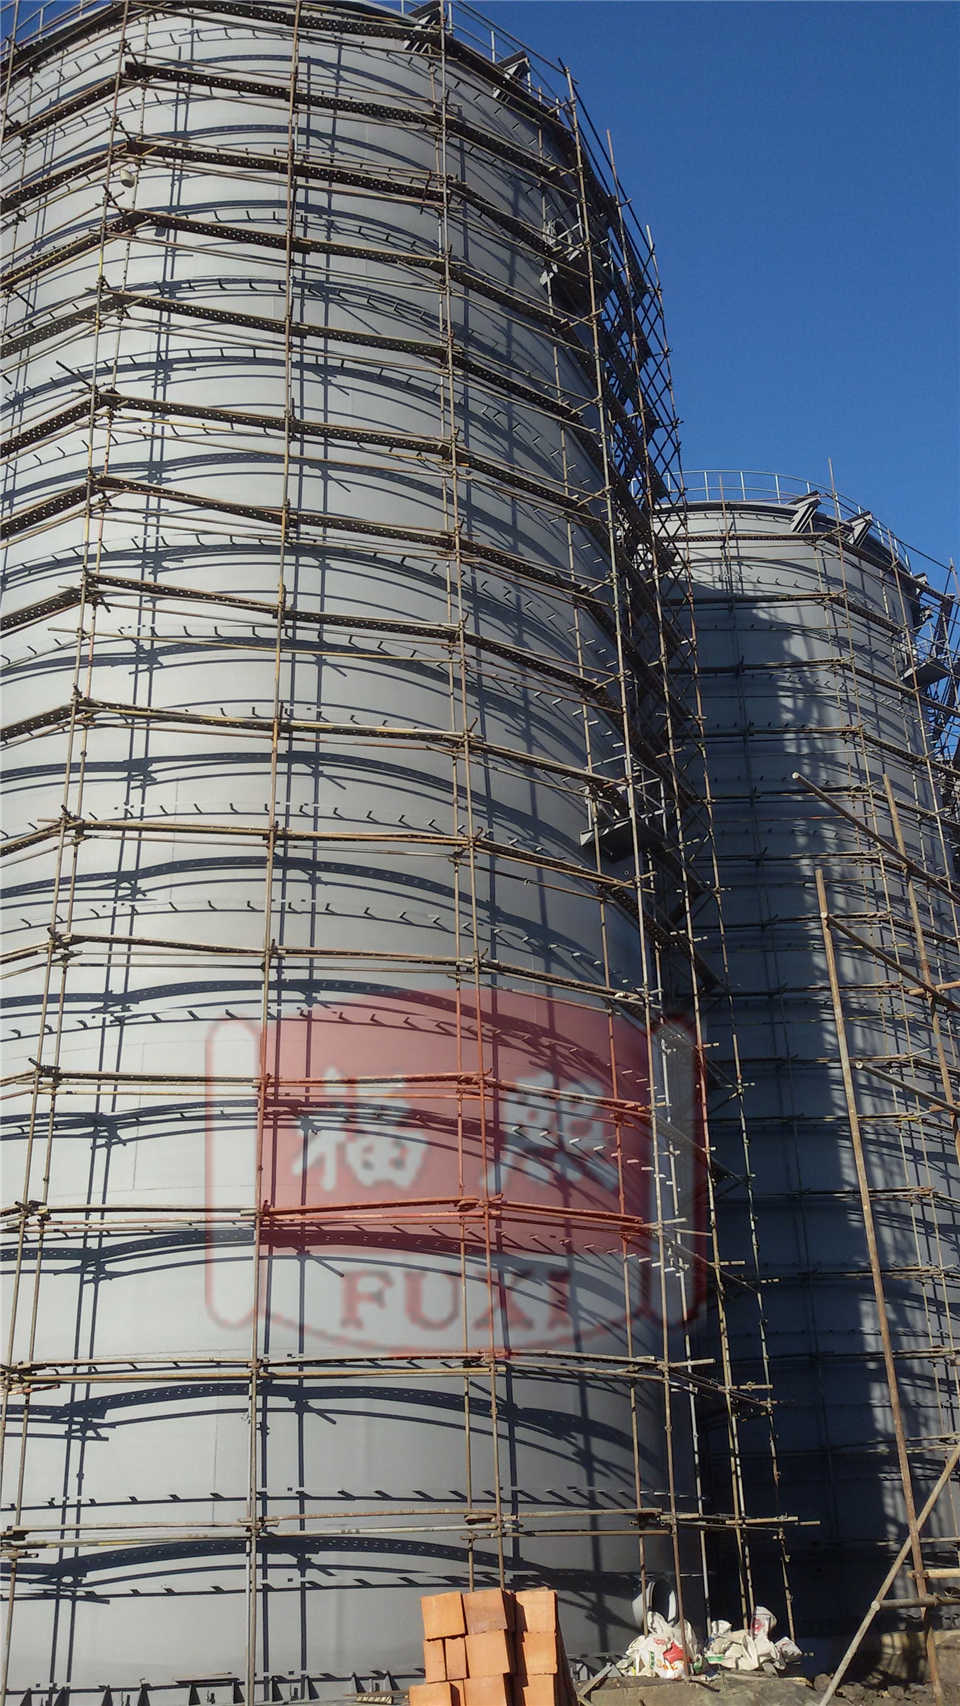 Antikorrosion Bau eines anaeroben Tanks in der russischen Papierfabrik